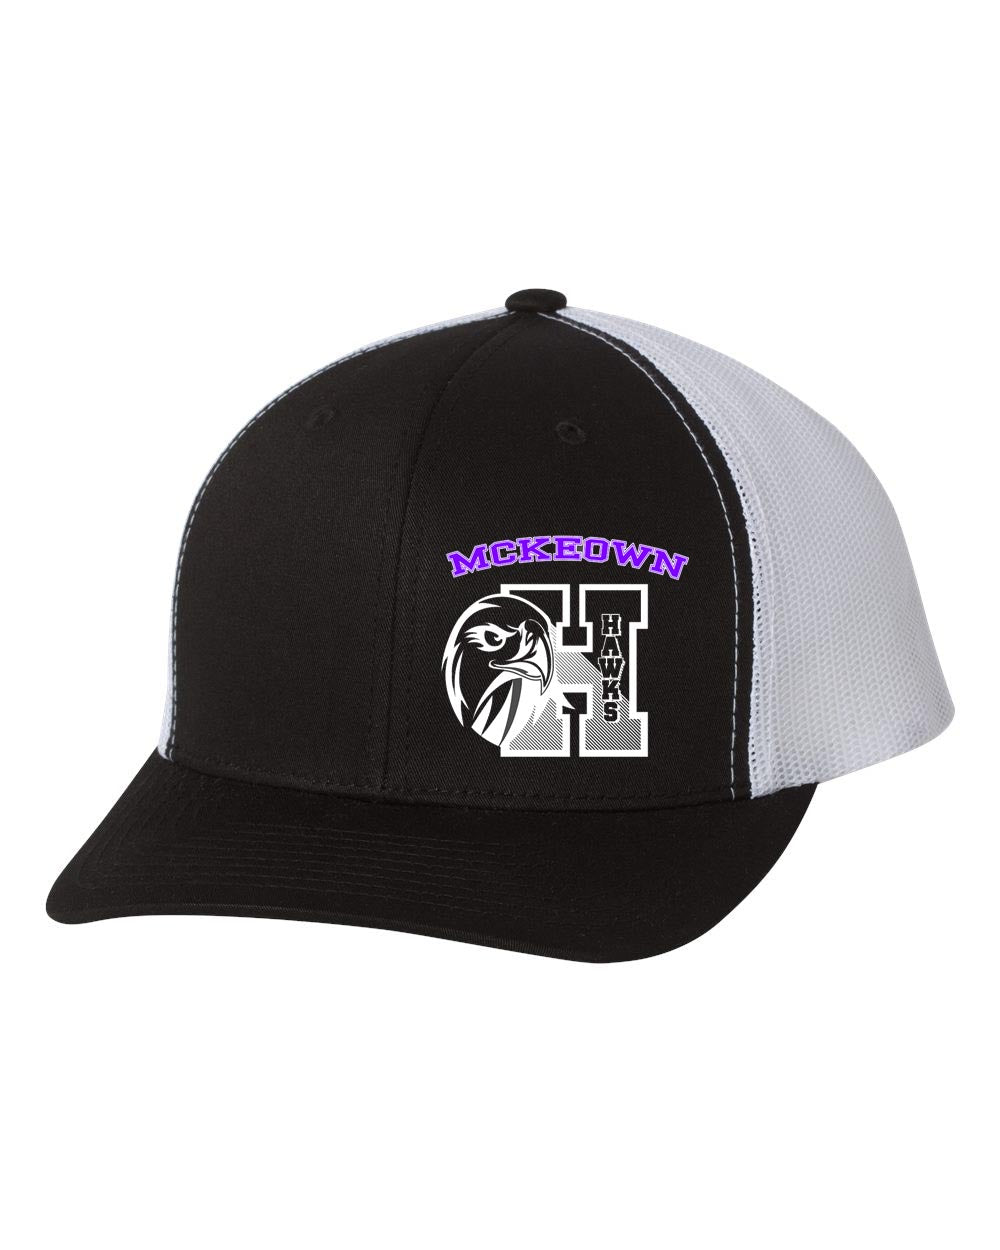 McKeown Design 10 Trucker Hat